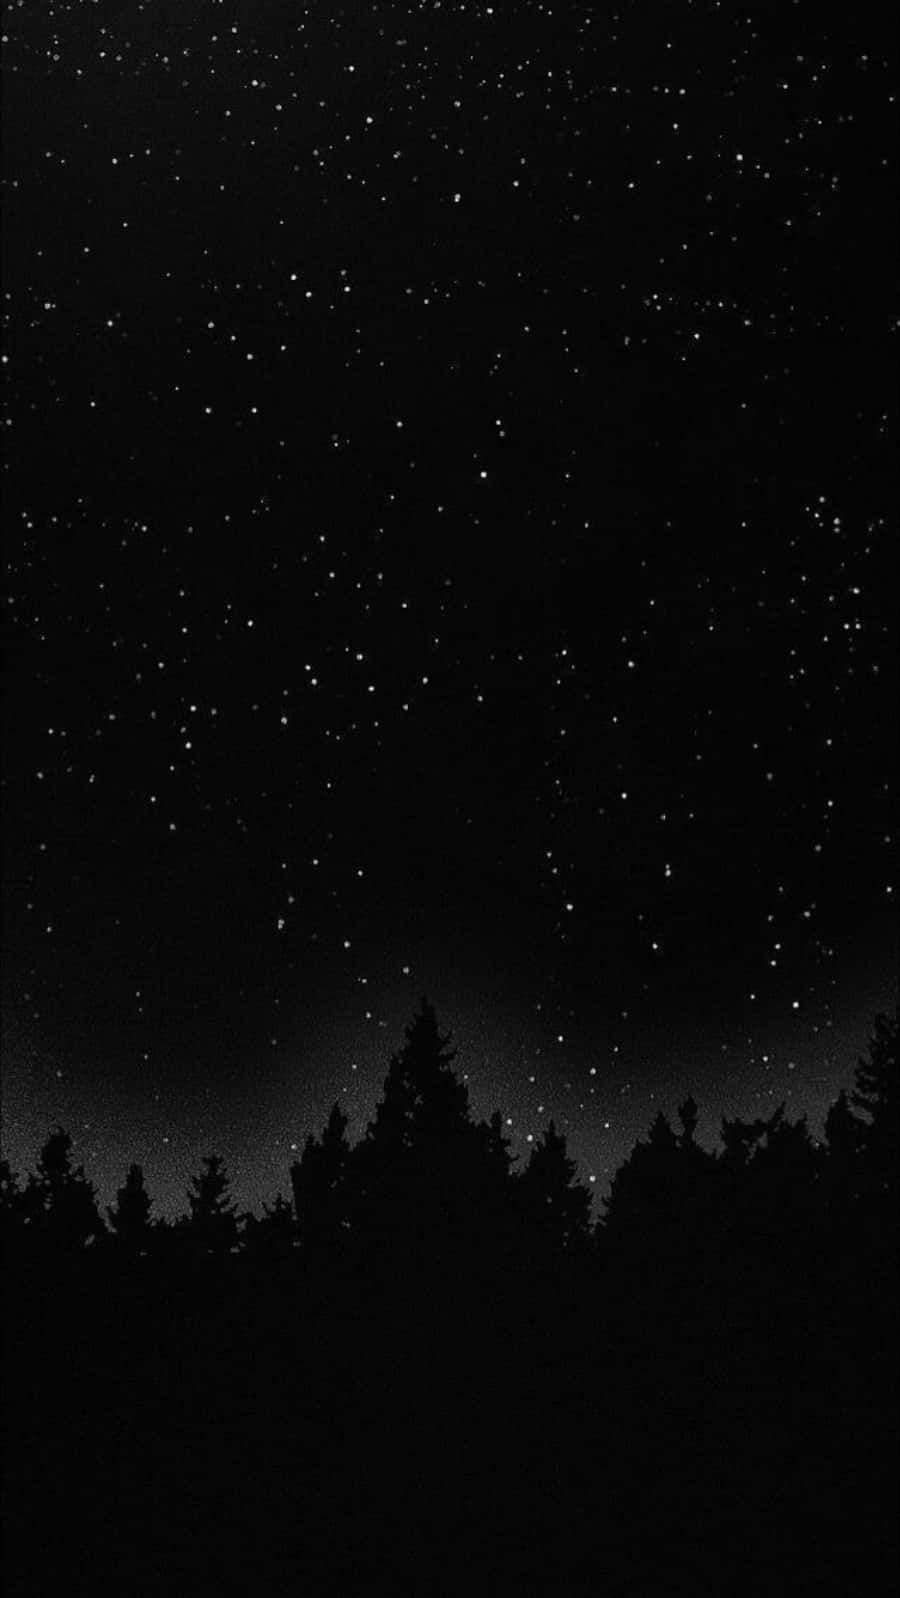 Dunklesnachthimmelsbild